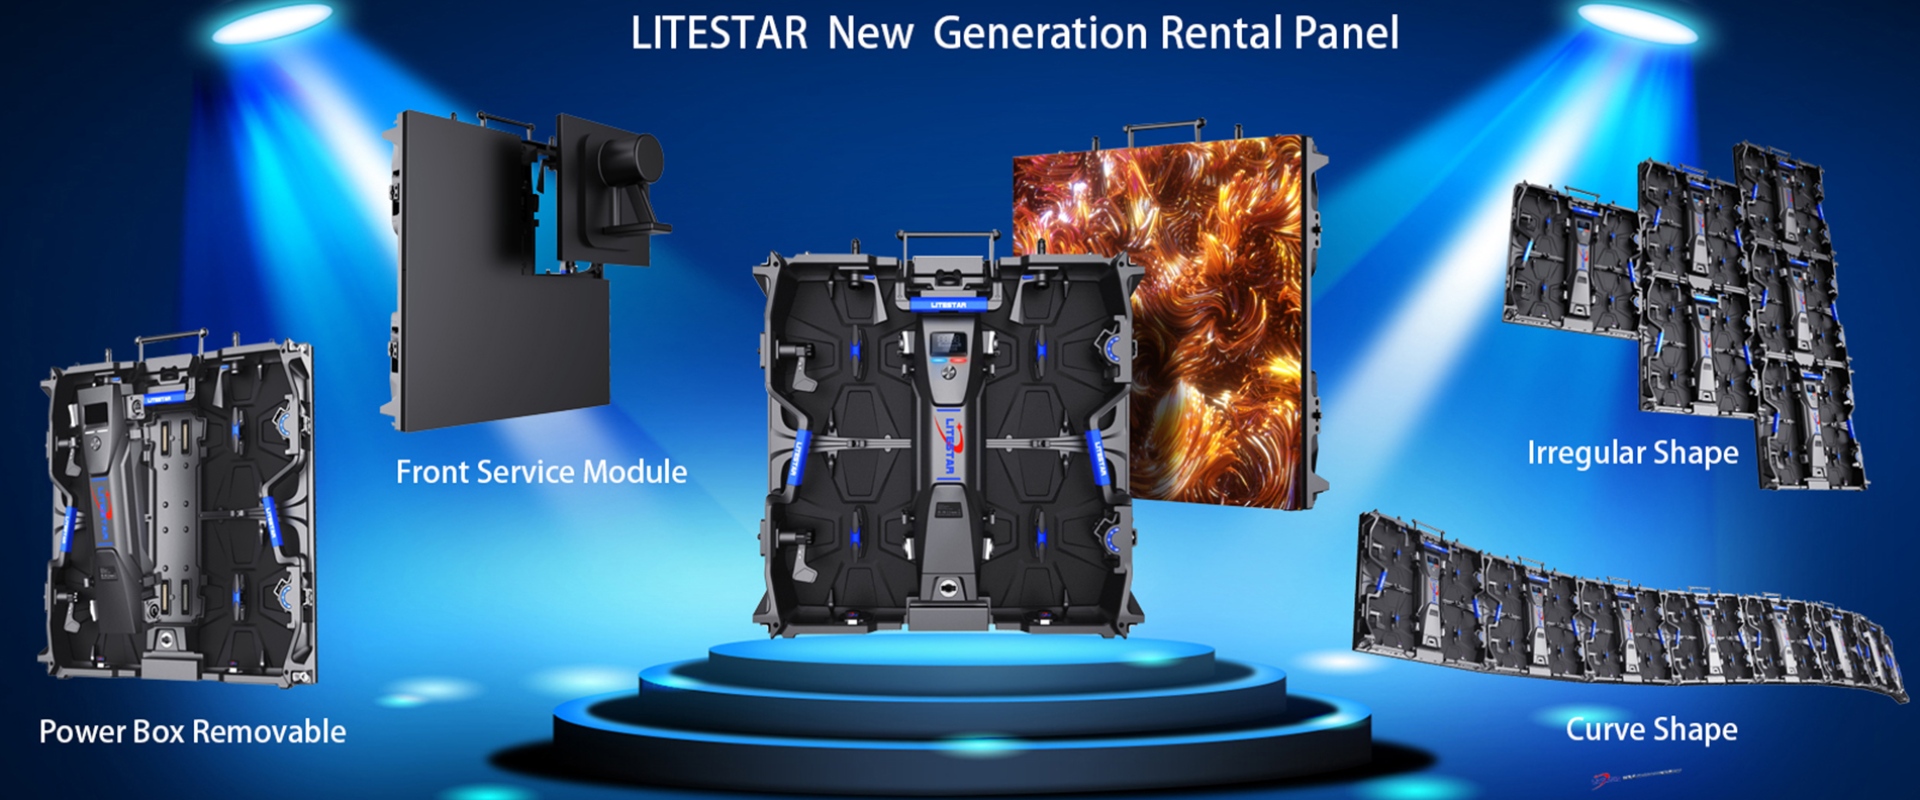 LSR Series Innovative Indoor Rental Panel LED